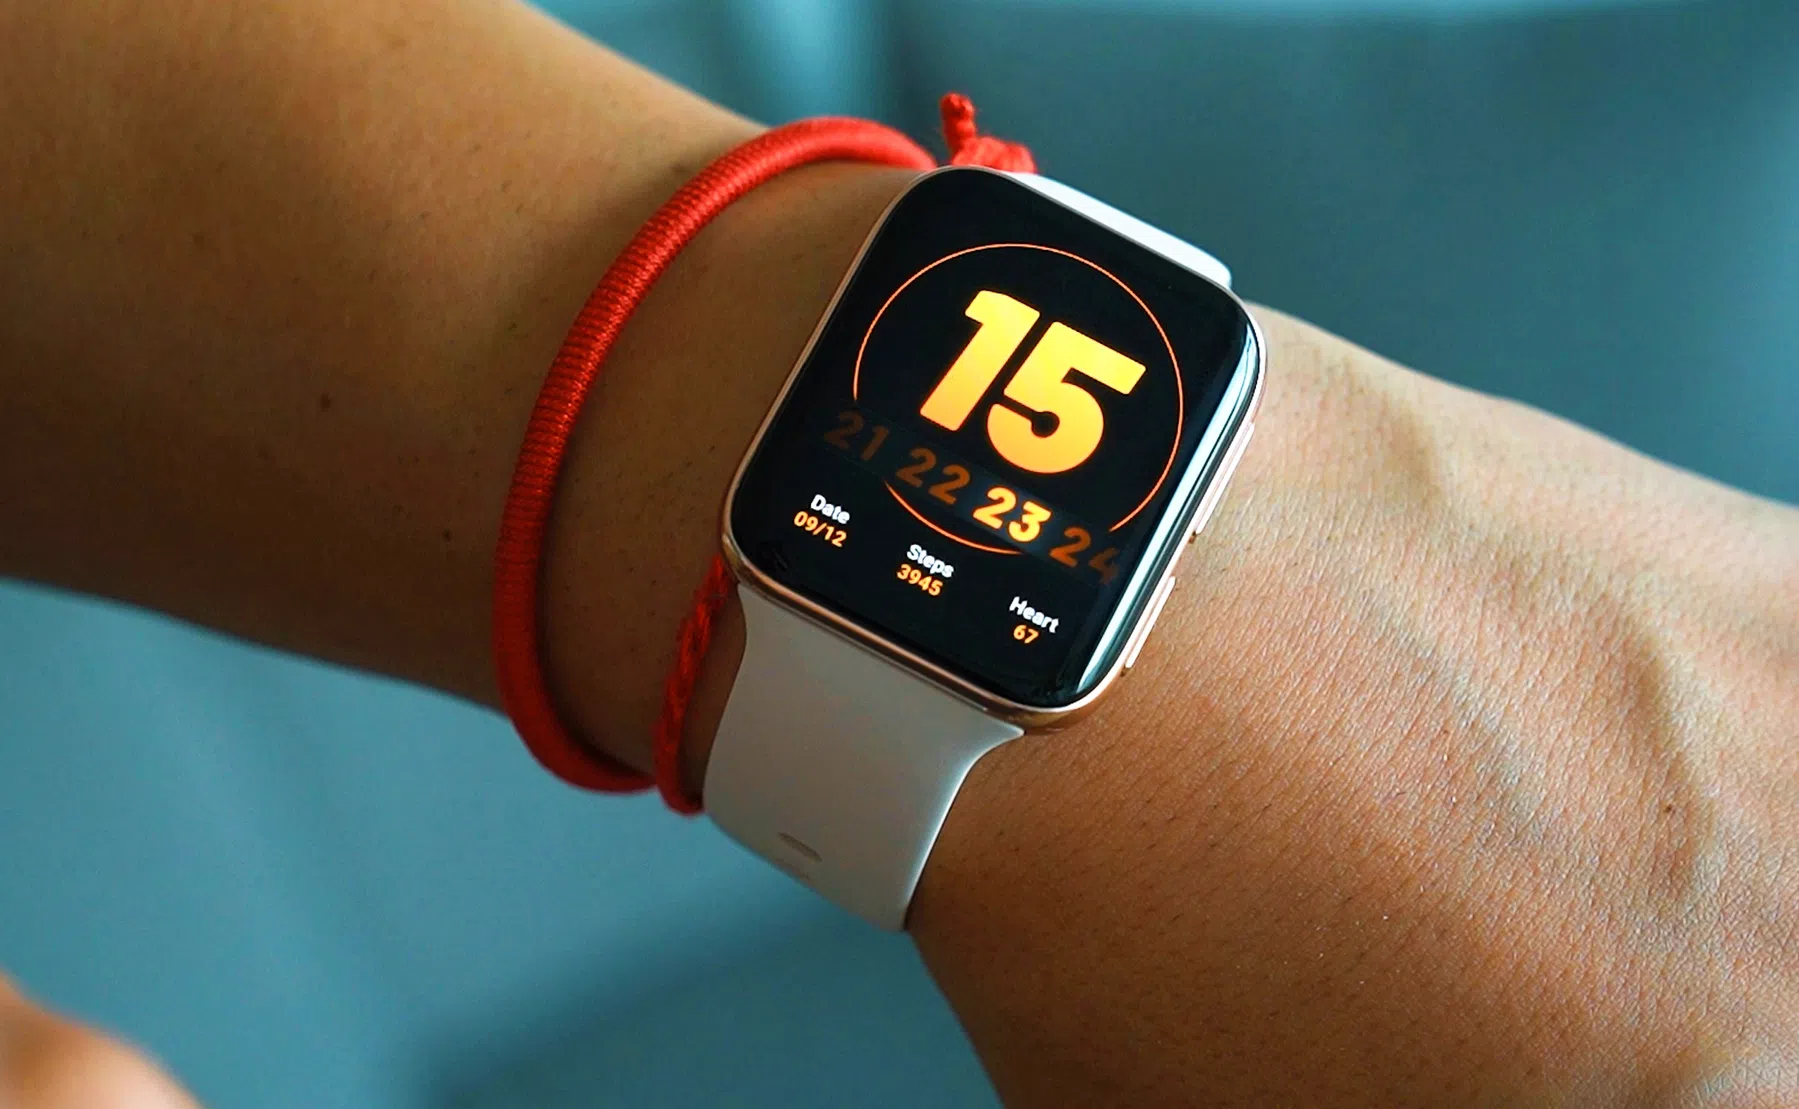 Wordt dit de nieuwe functie van de Apple Watch?